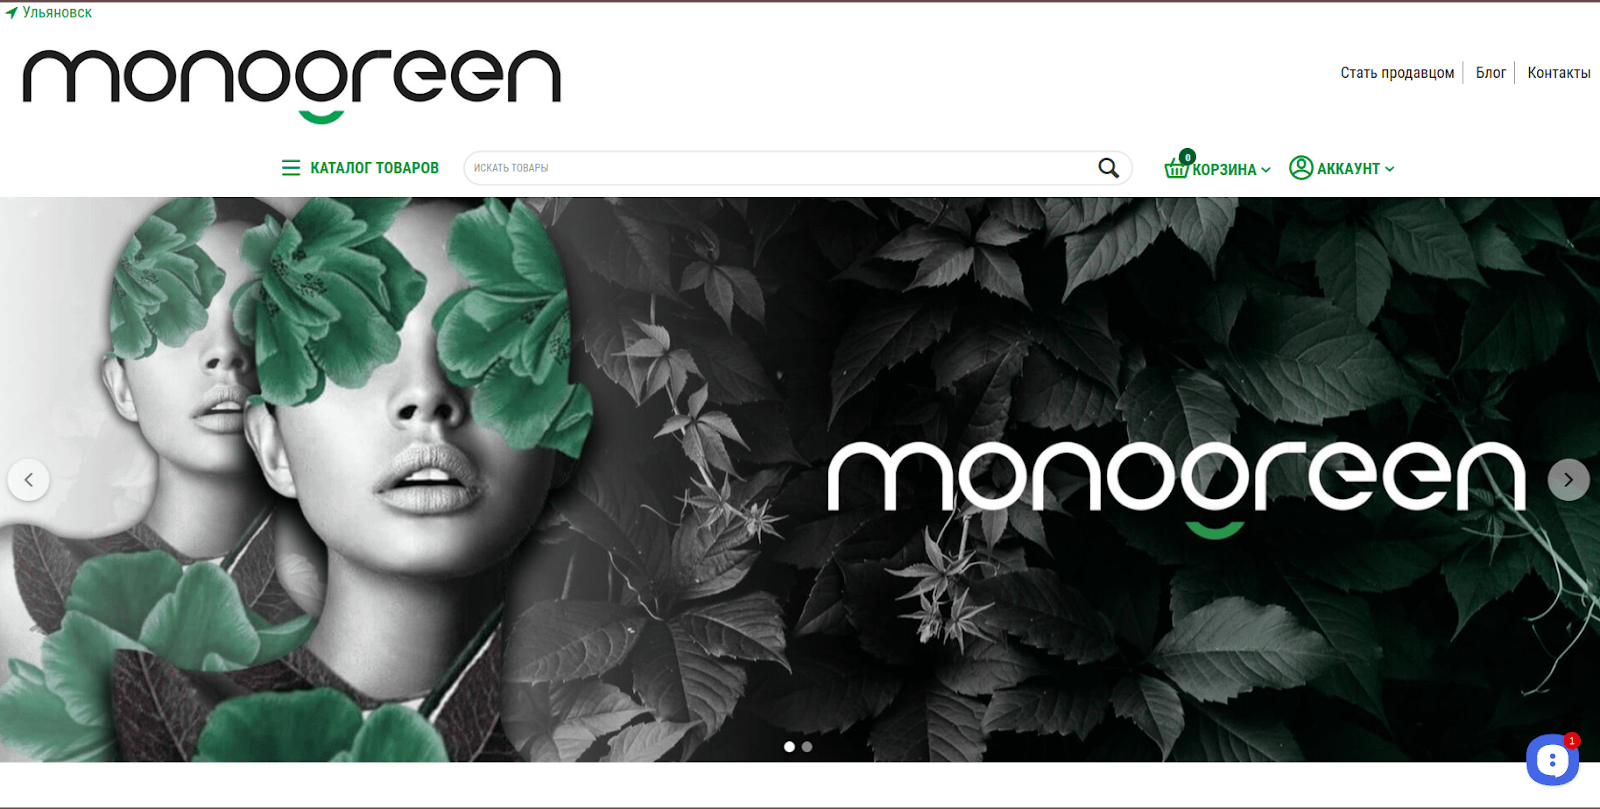 Monogreen.ru — маркетплейс экологичных товаров, недавно разработанный командой Simtech Development.